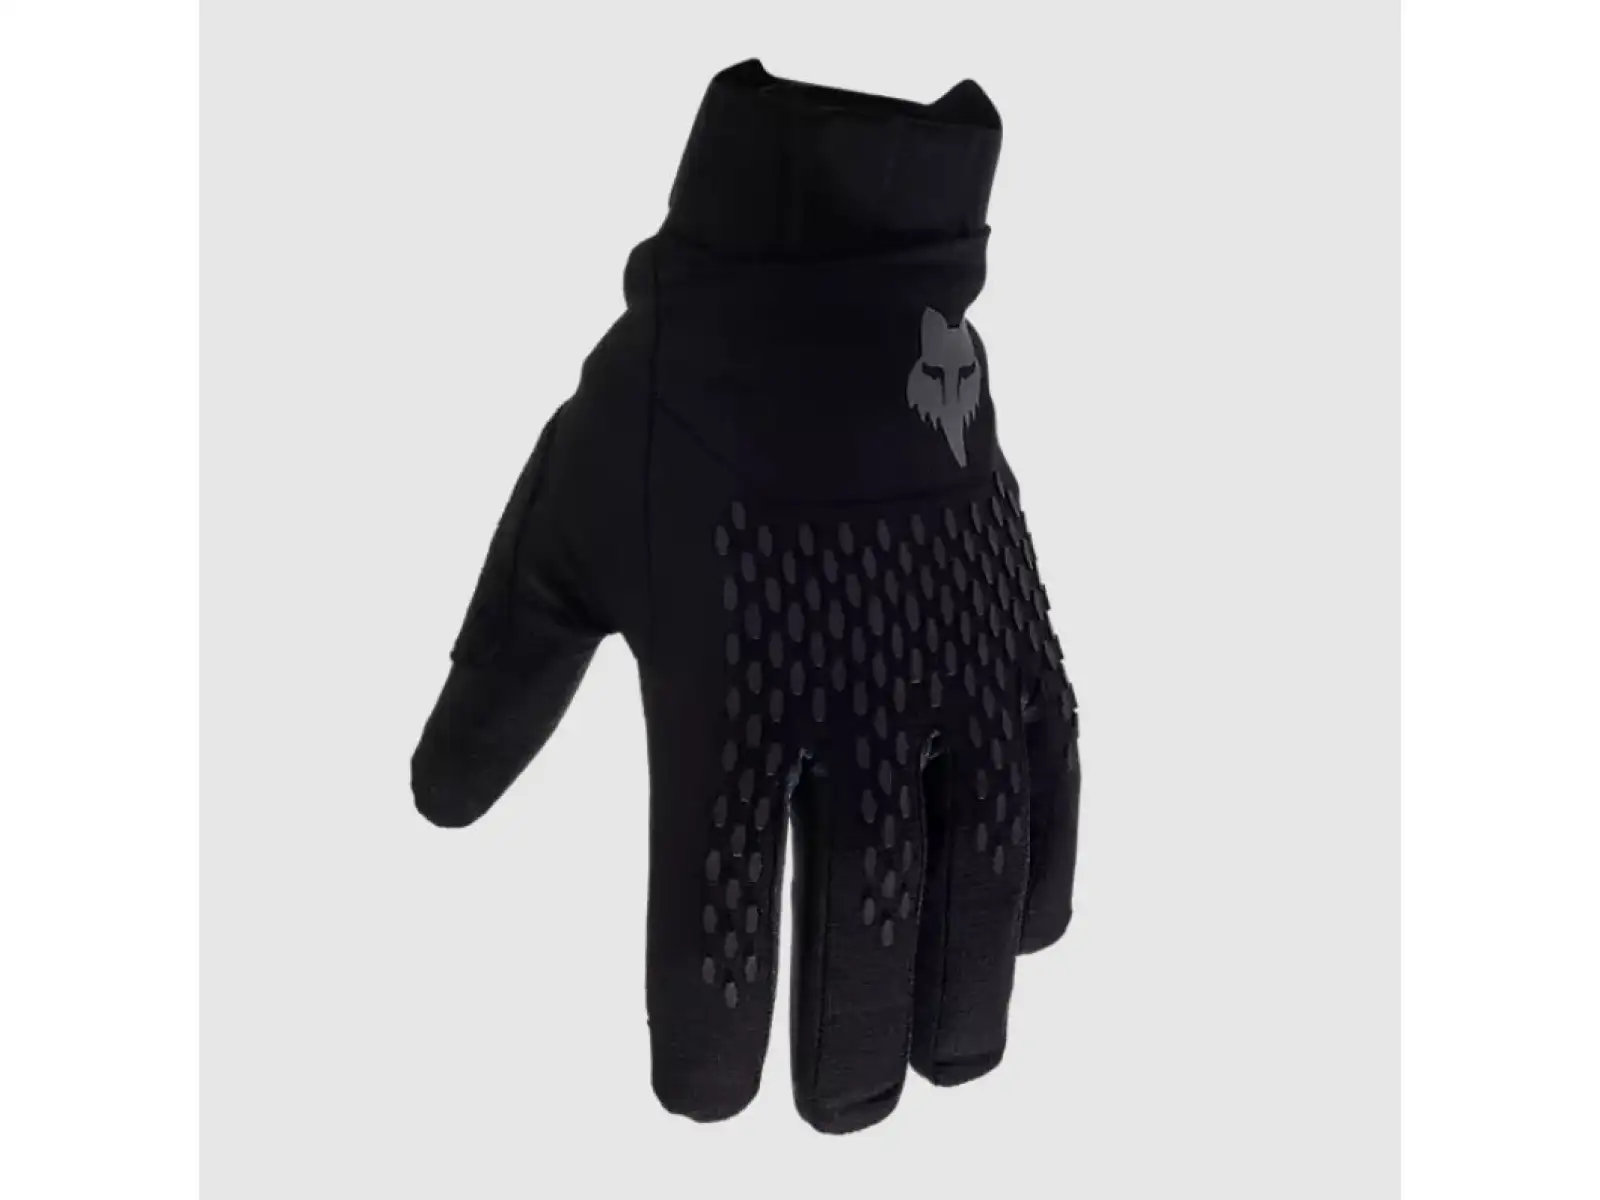 Fox Defend Pro Winter rukavice Black